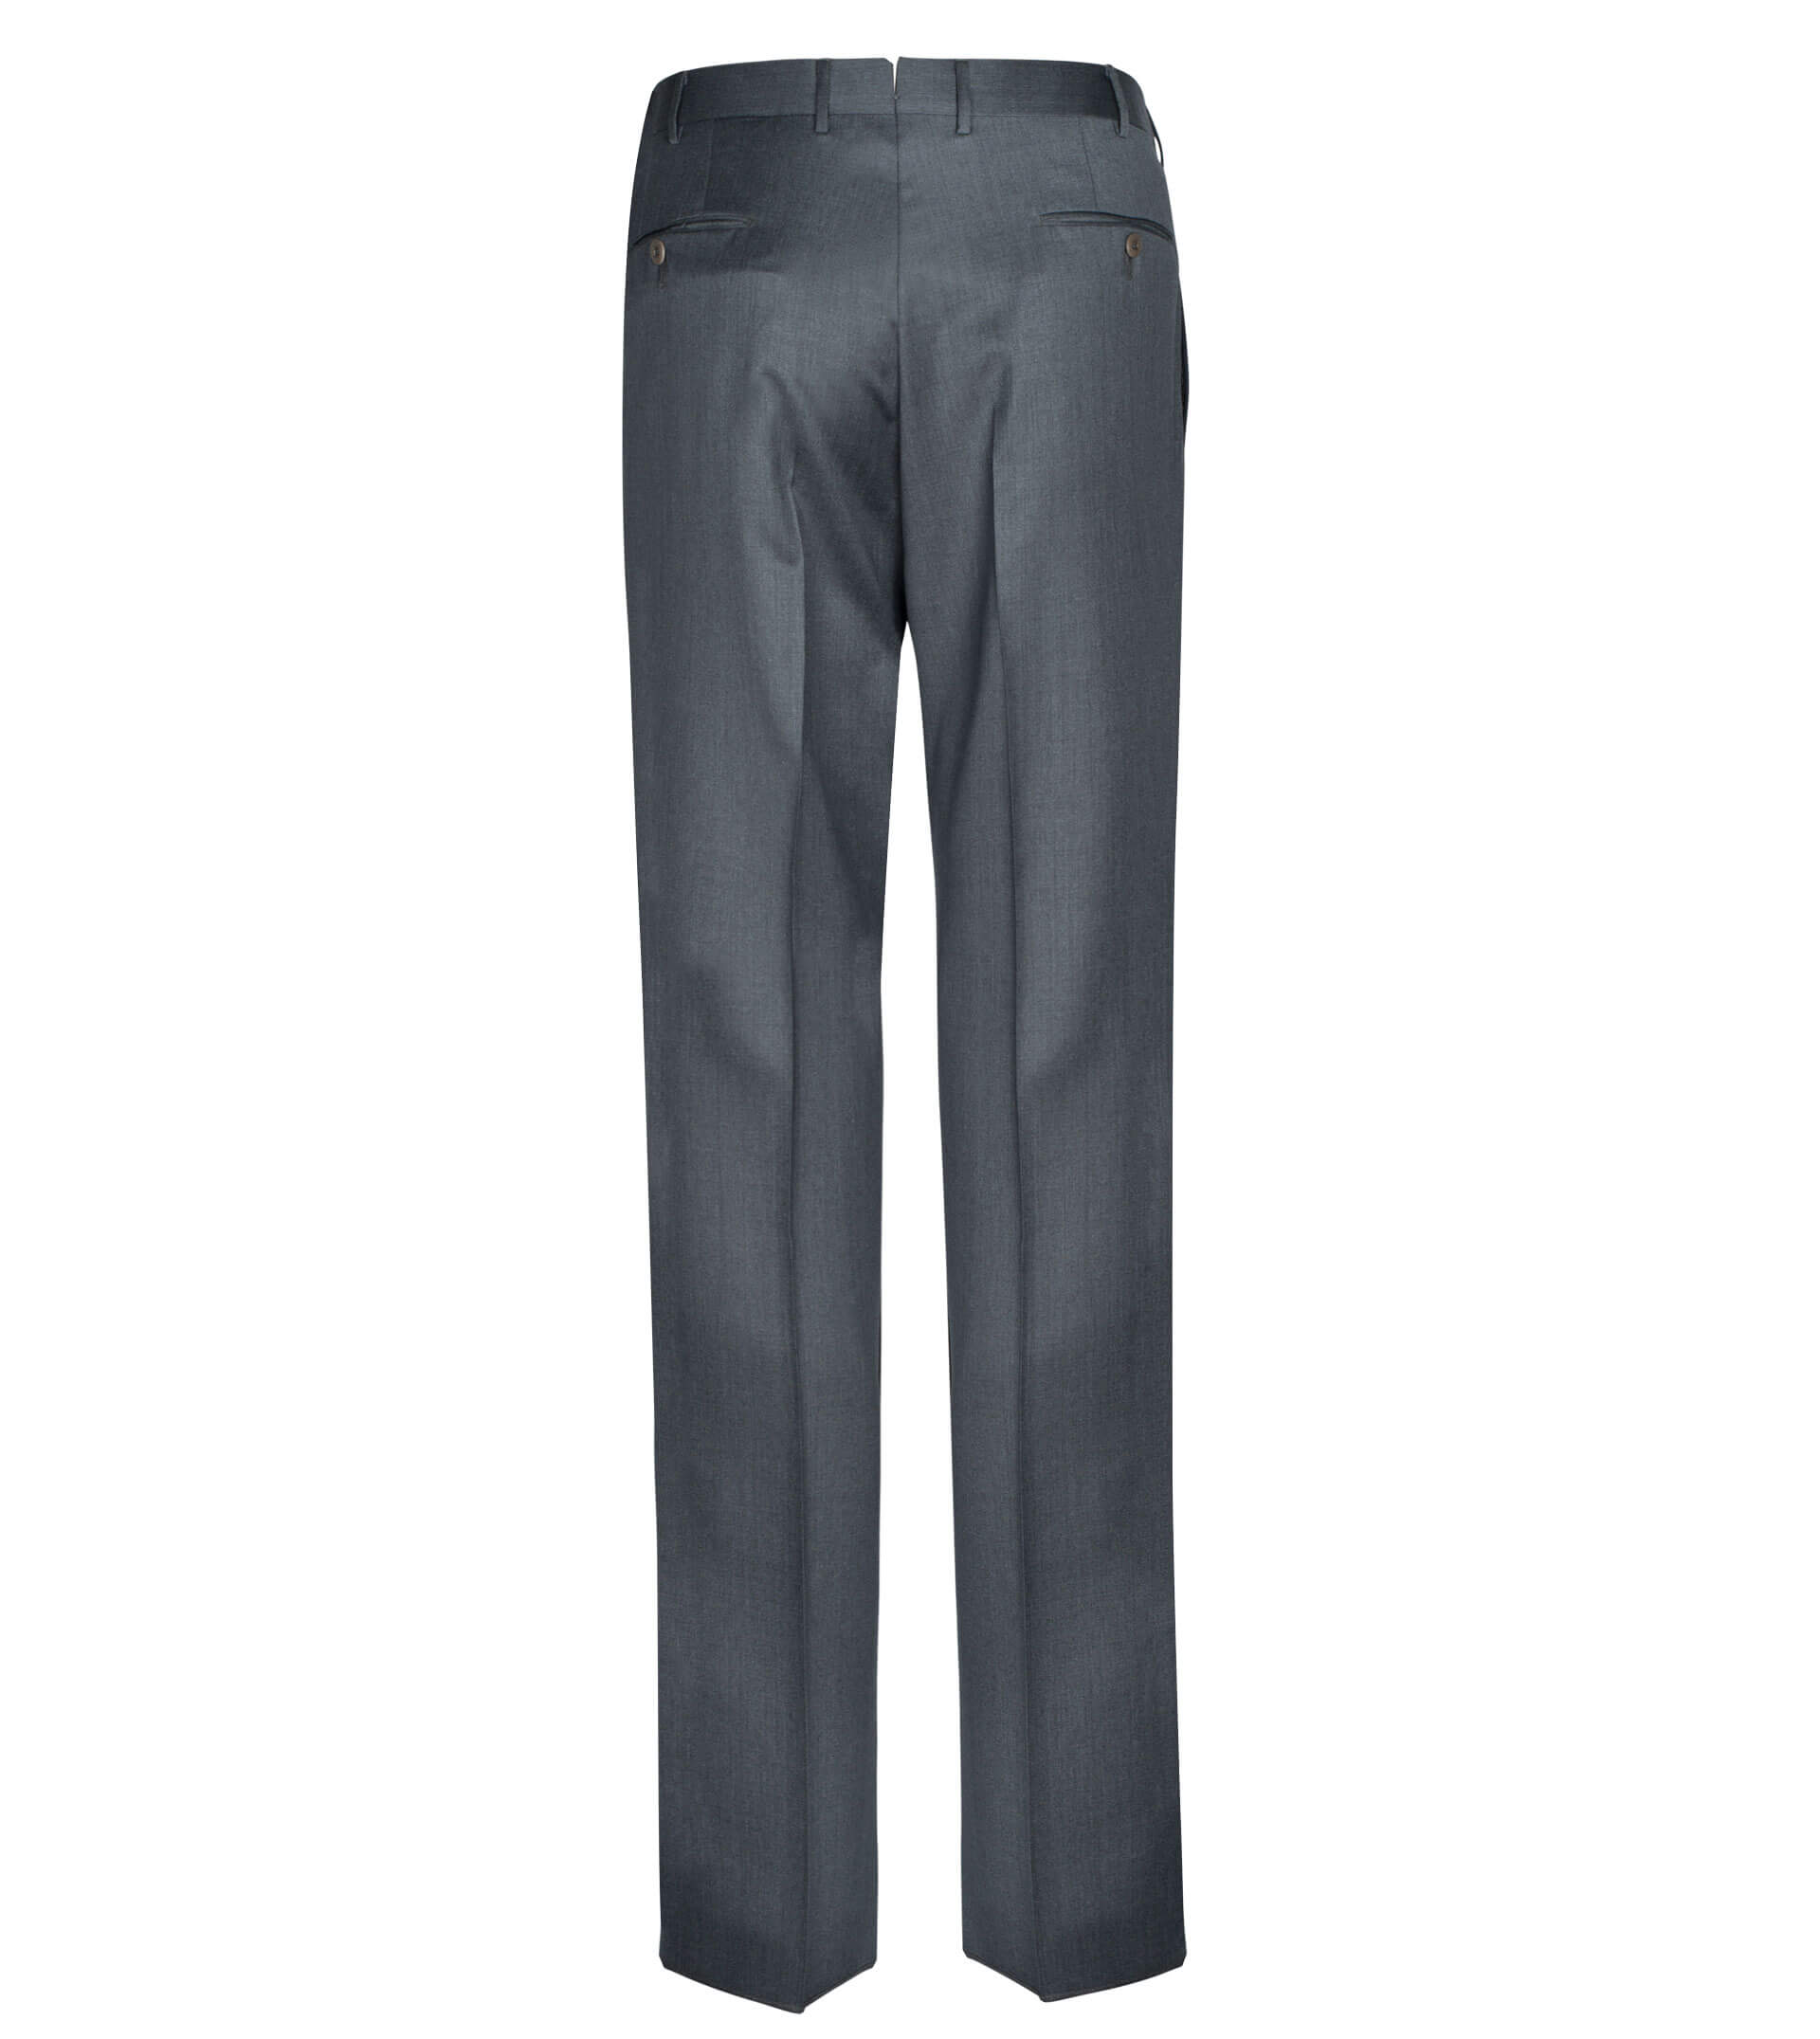 ERMENEGILDO ZEGNA Flat Front Wool Trouser Grey